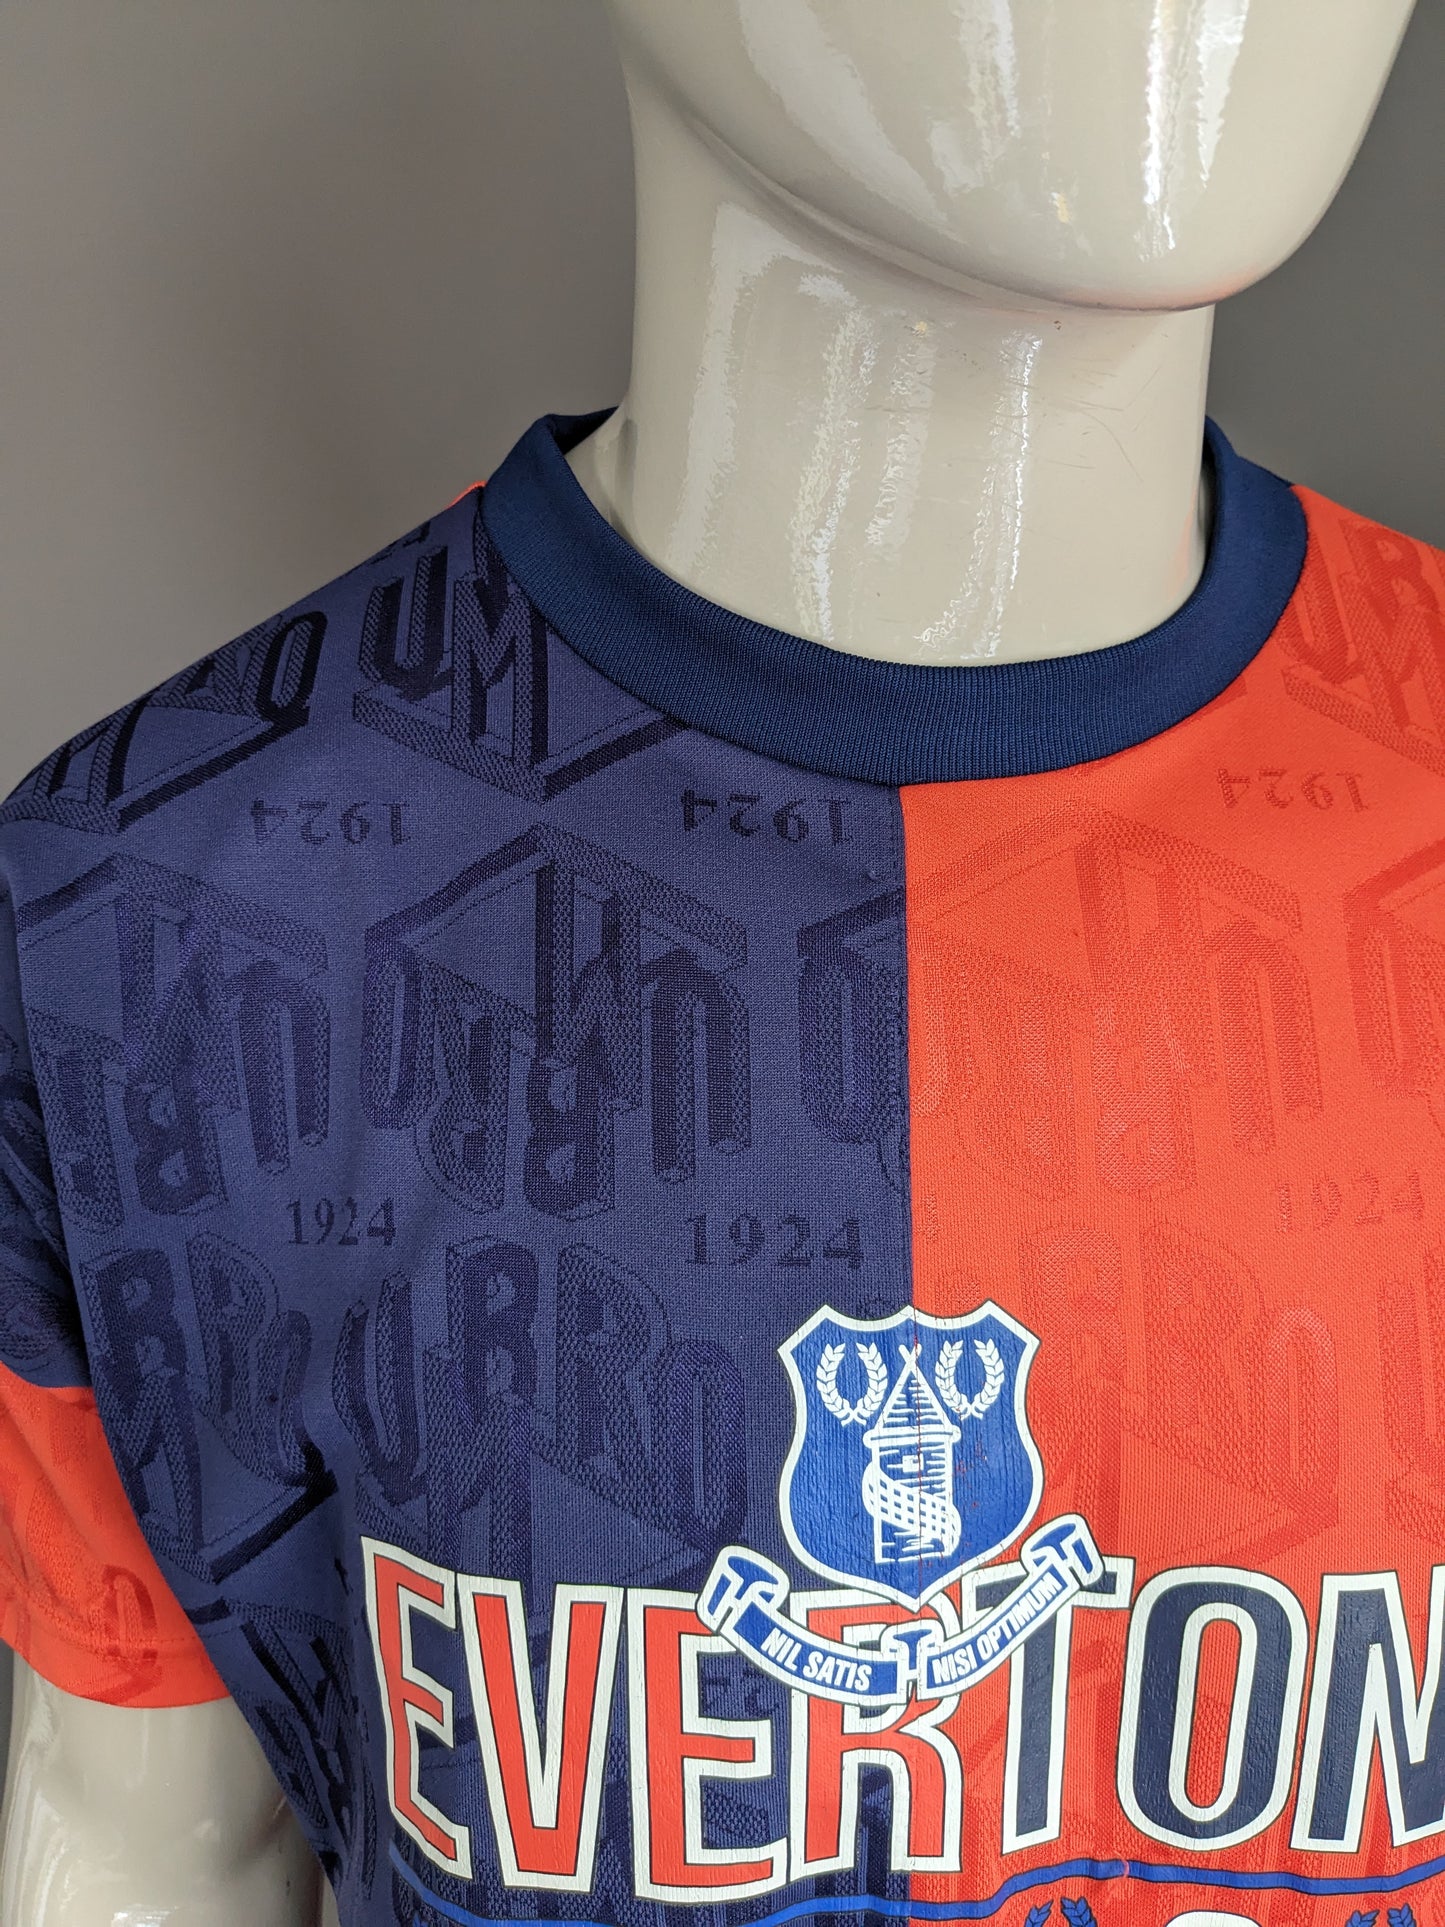 Vintage Umbro Everton sport shirt. Blauw Oranje gekleurd motief. Maat (S) / L.